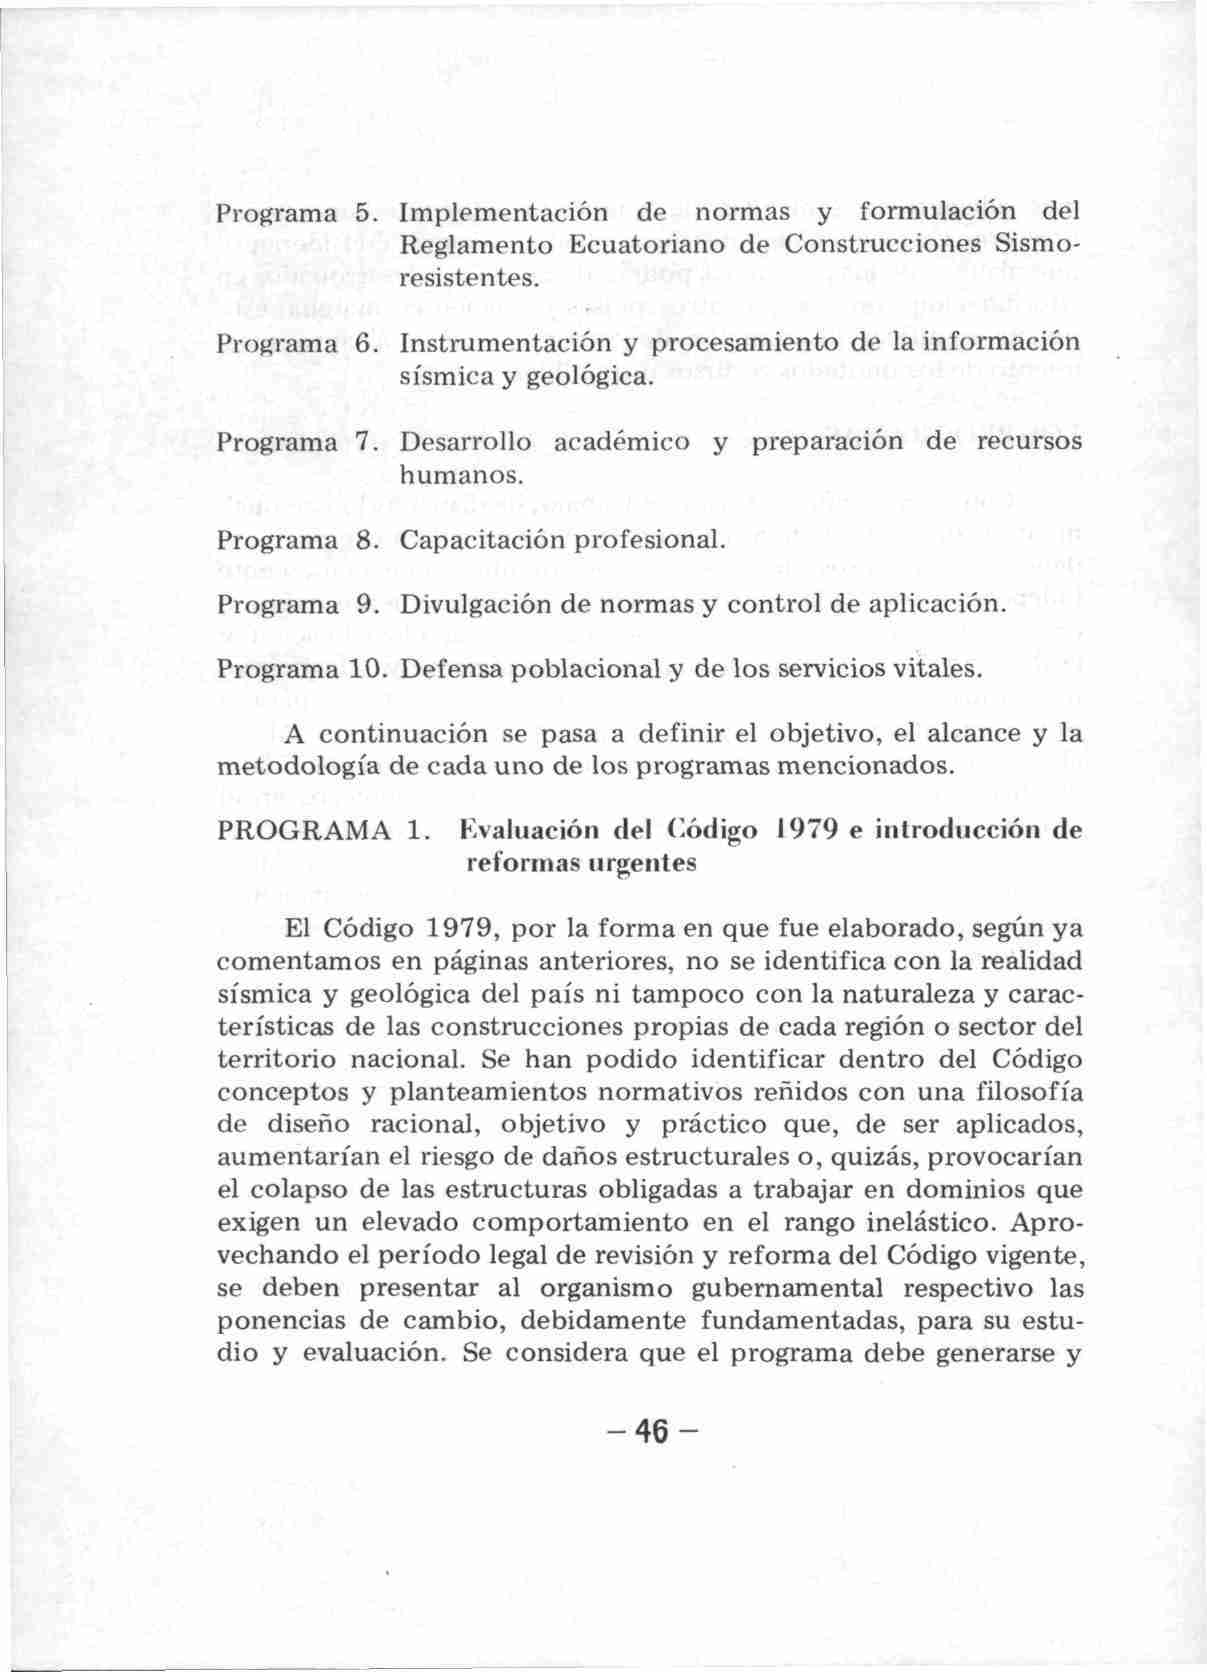 Programa 5. Implementación de normas y formulación del Reglamento Ecuatoriano de Construcciones Sismoresistentes. Programa 6. Instrumentación y procesamiento de la información sísmica y geológica.